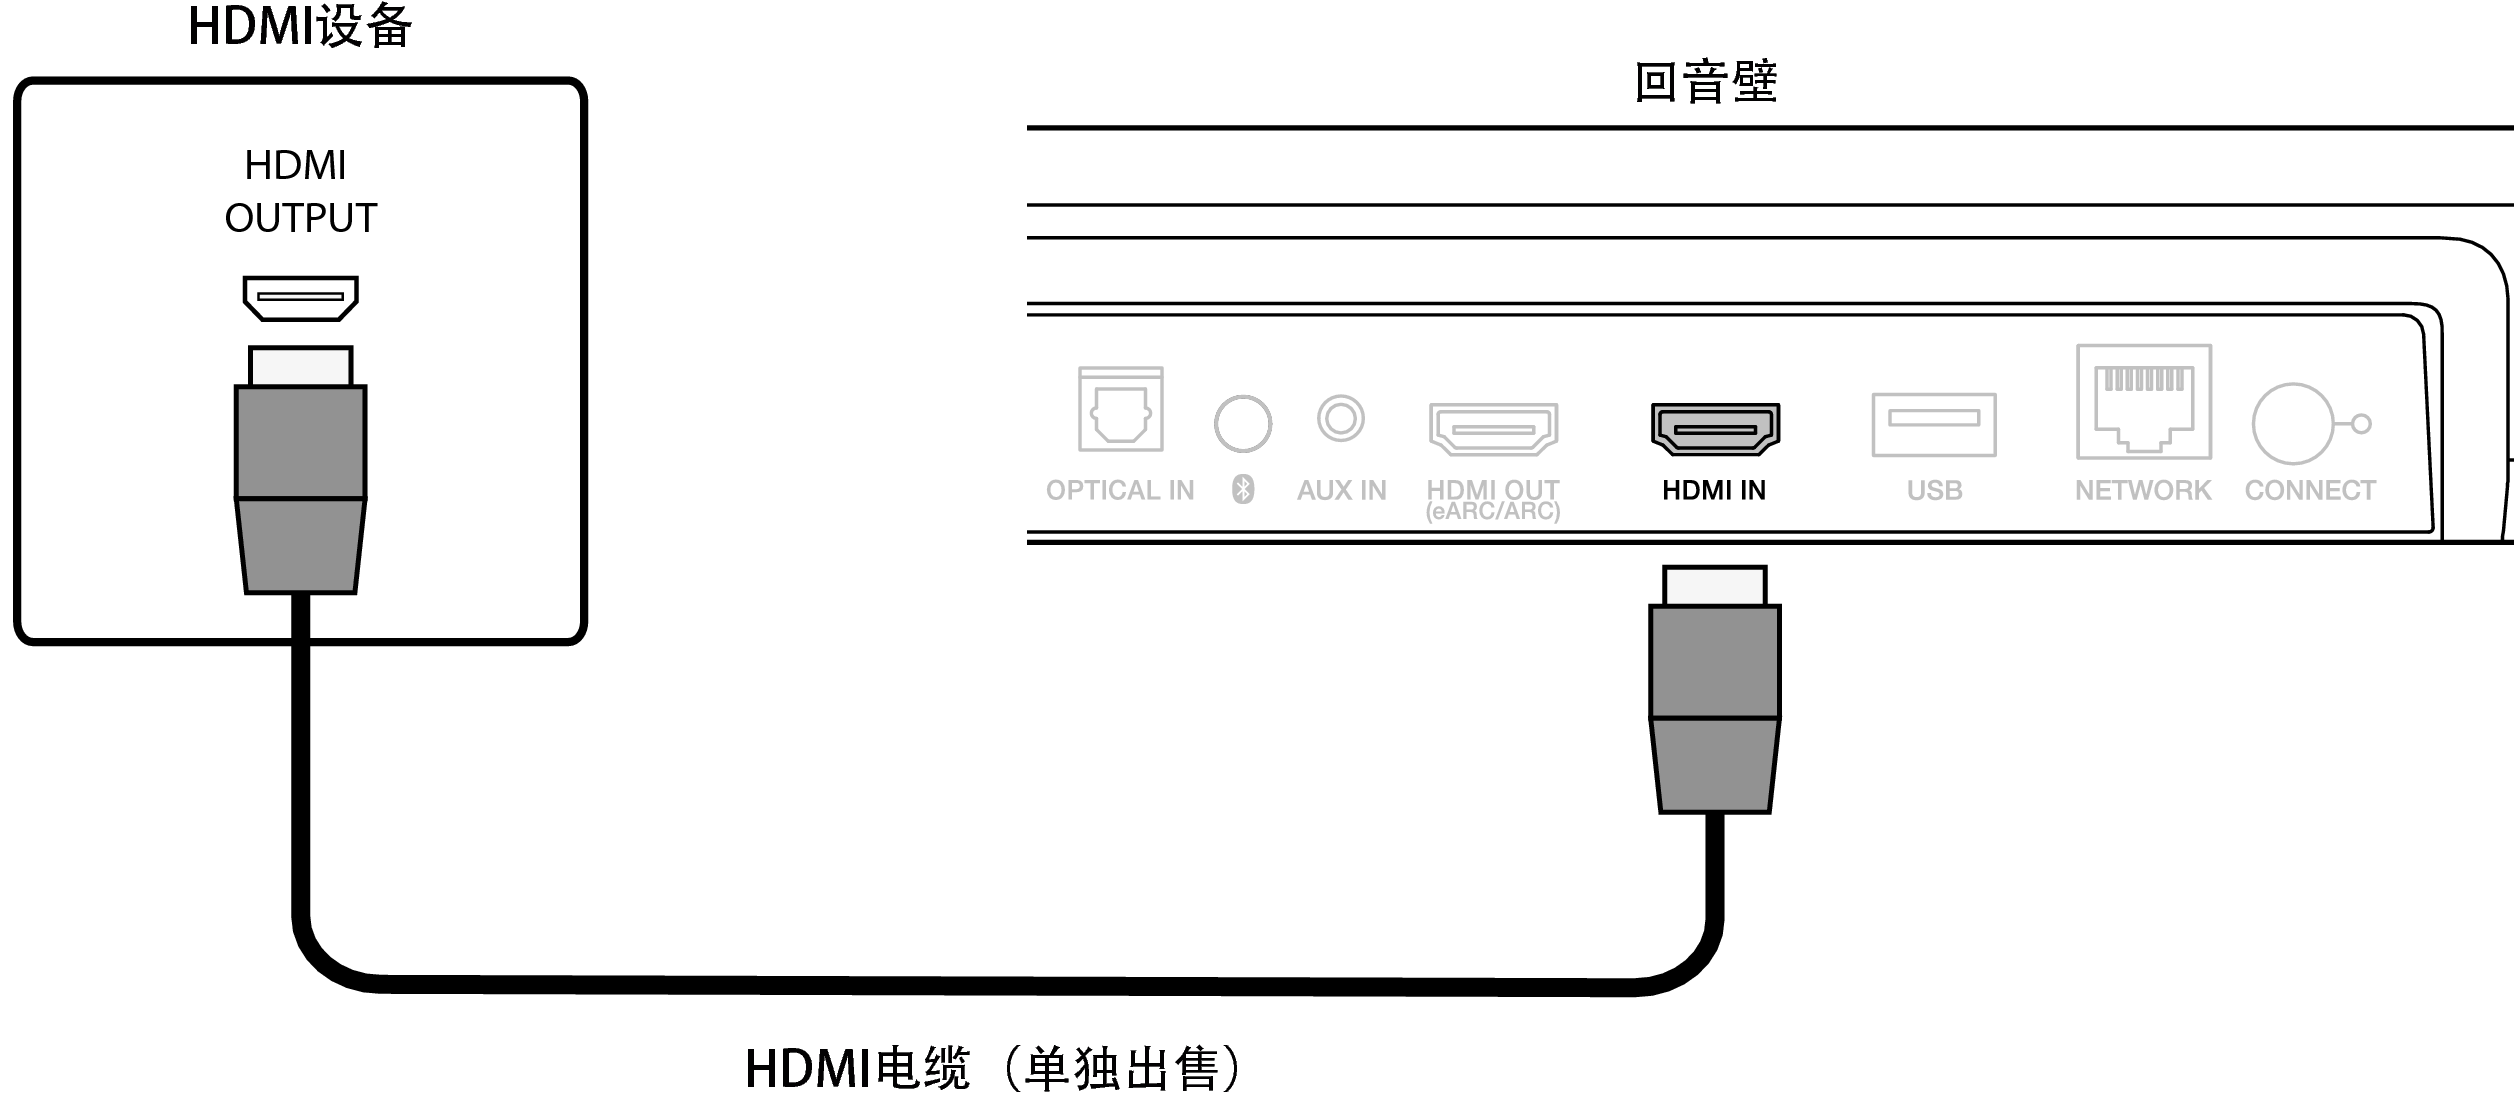 Conne HDMI IN SB550